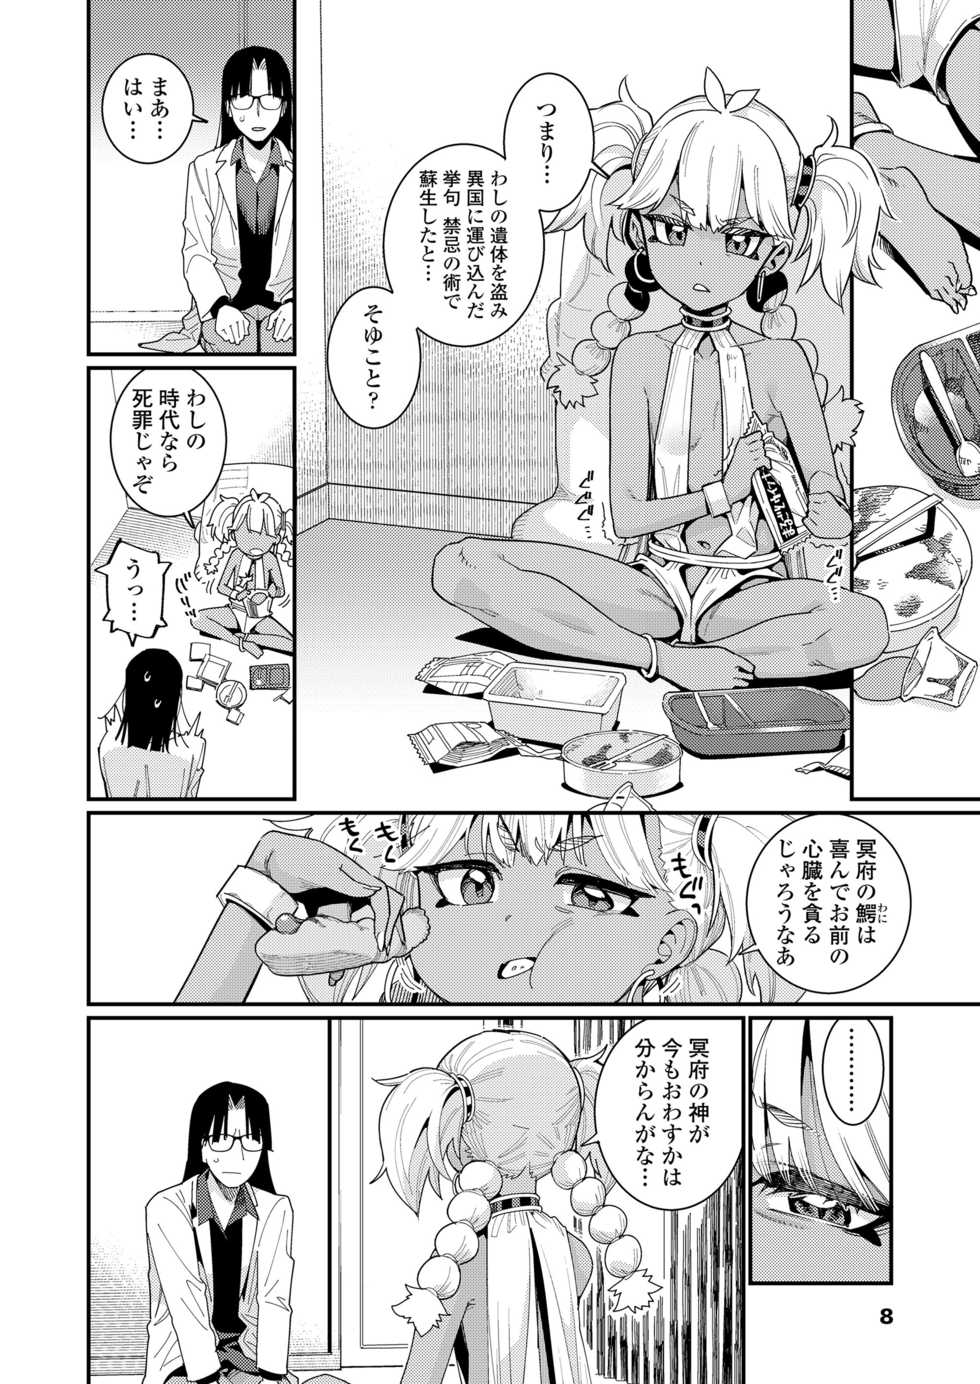 Towako 10 [Digital] - Page 8